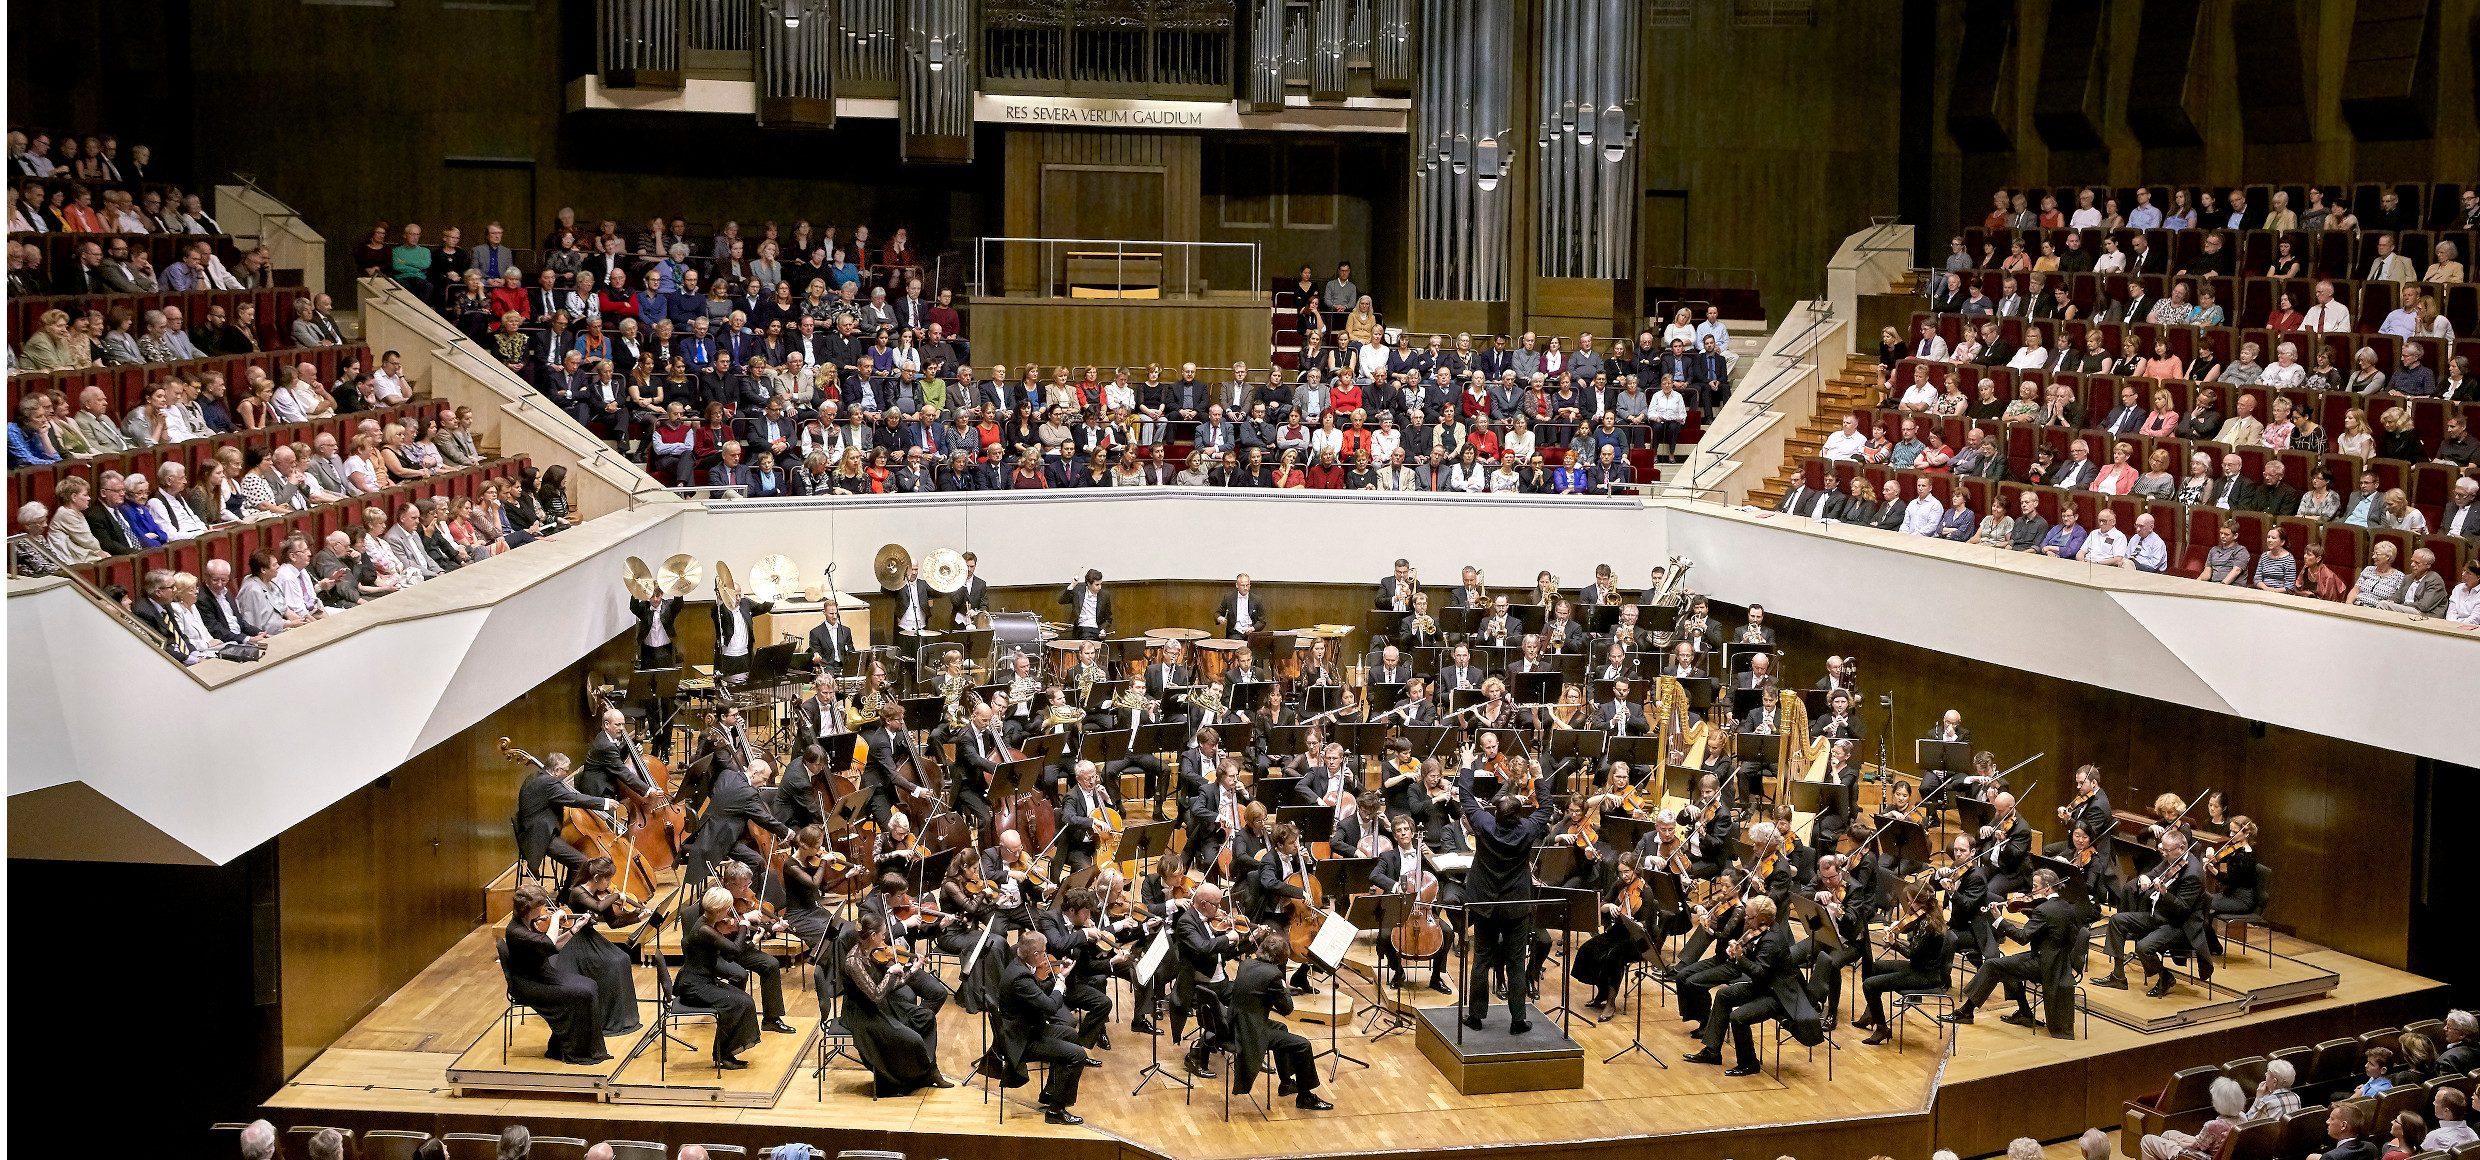 Leipzig Gewandhausorchester